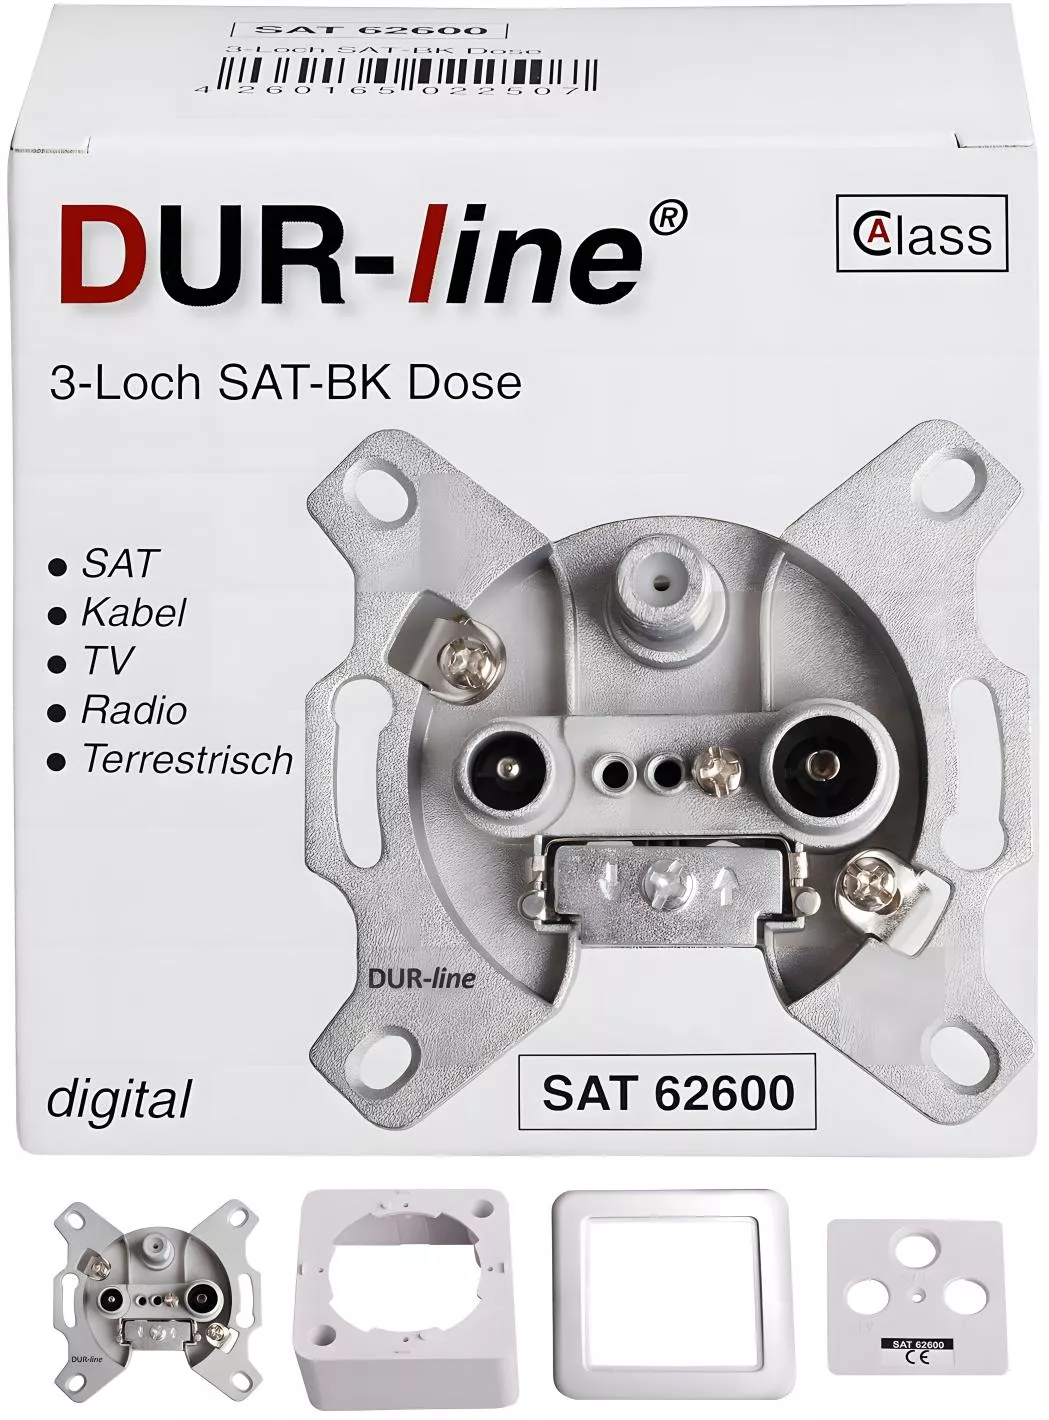 DUR-line SAT 62600 Sat Enddose 3-Loch-Artikelnummer-056 000 20-von-DUR-line